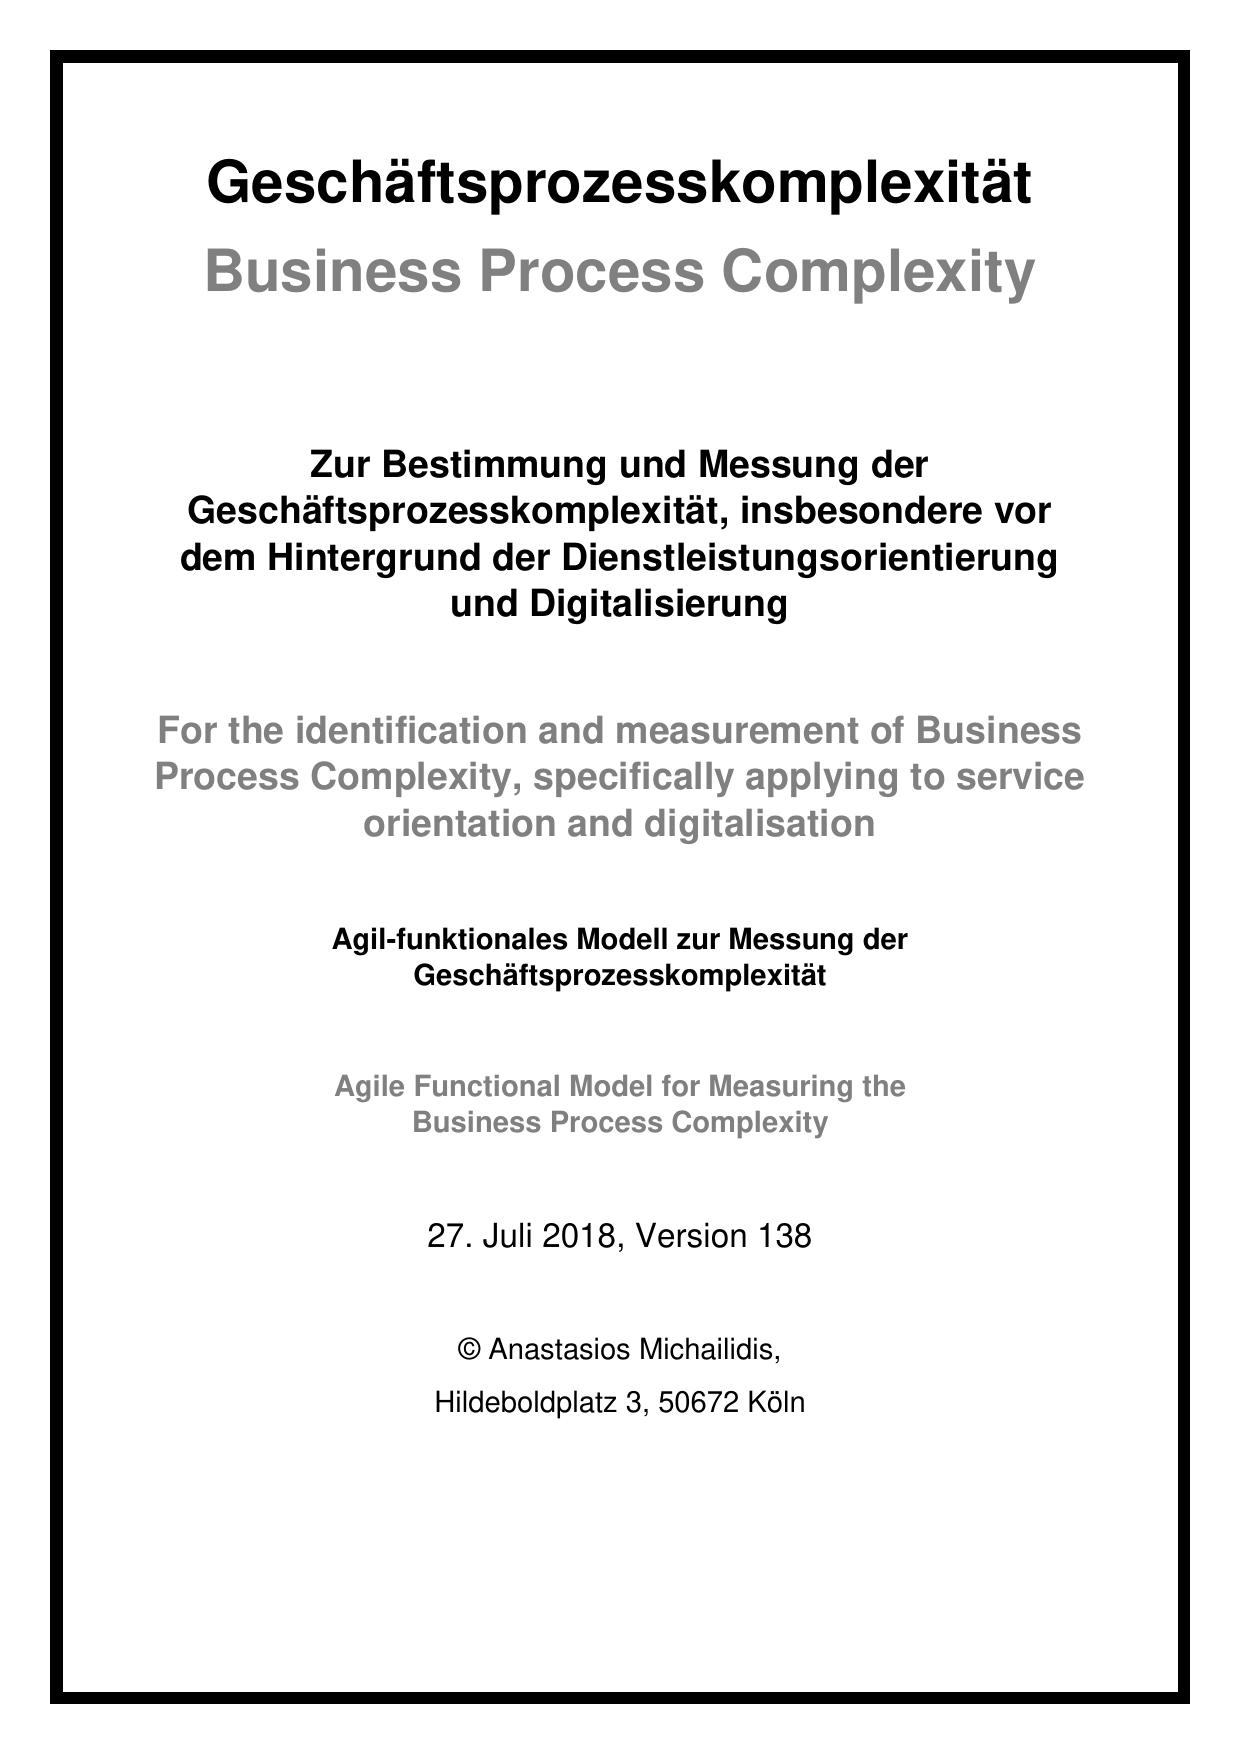 Michailidis, Anastasios - Geschäftsprozesskomplexität (Business Process Complexity)